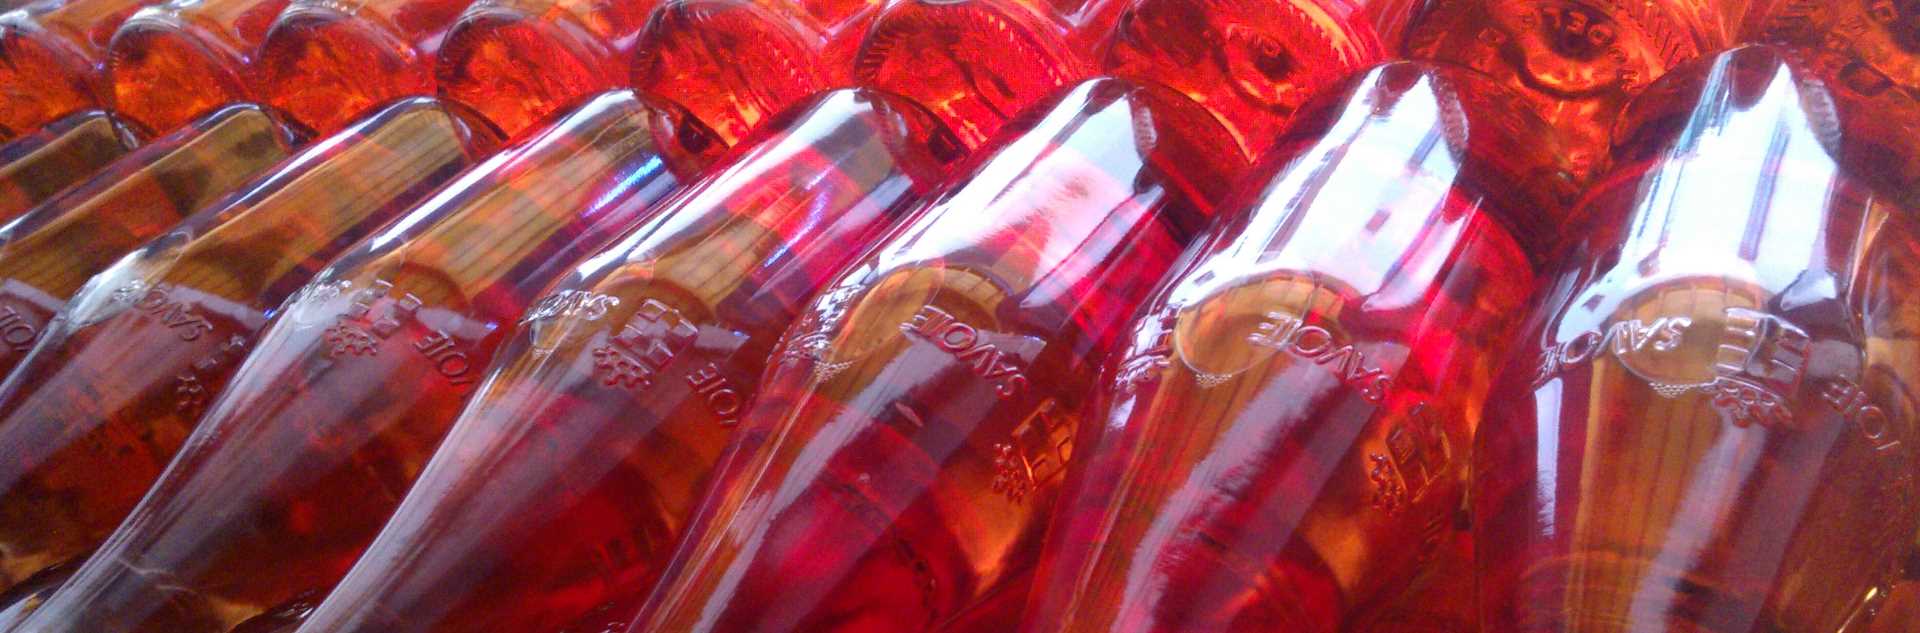 Bouteilles Vins de Savoie rosés